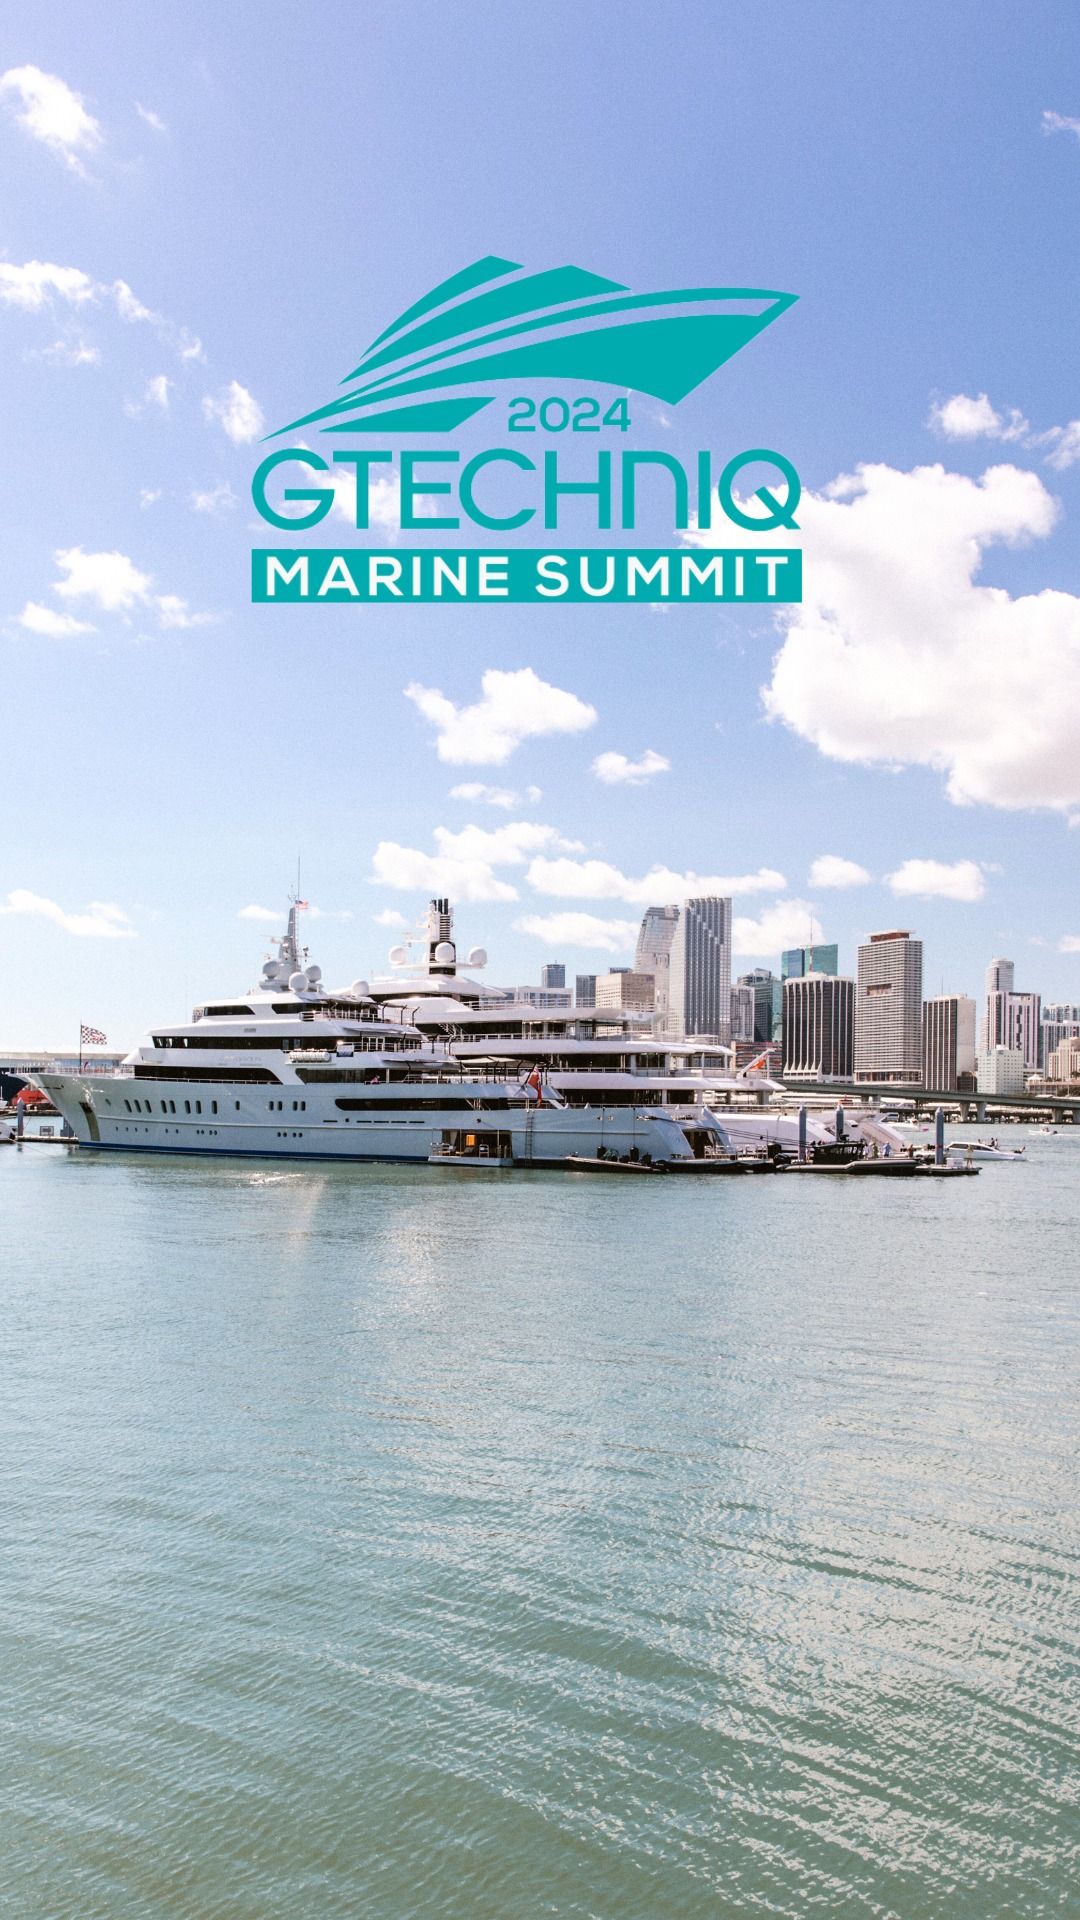 Gtechniq Marine Summit 2024